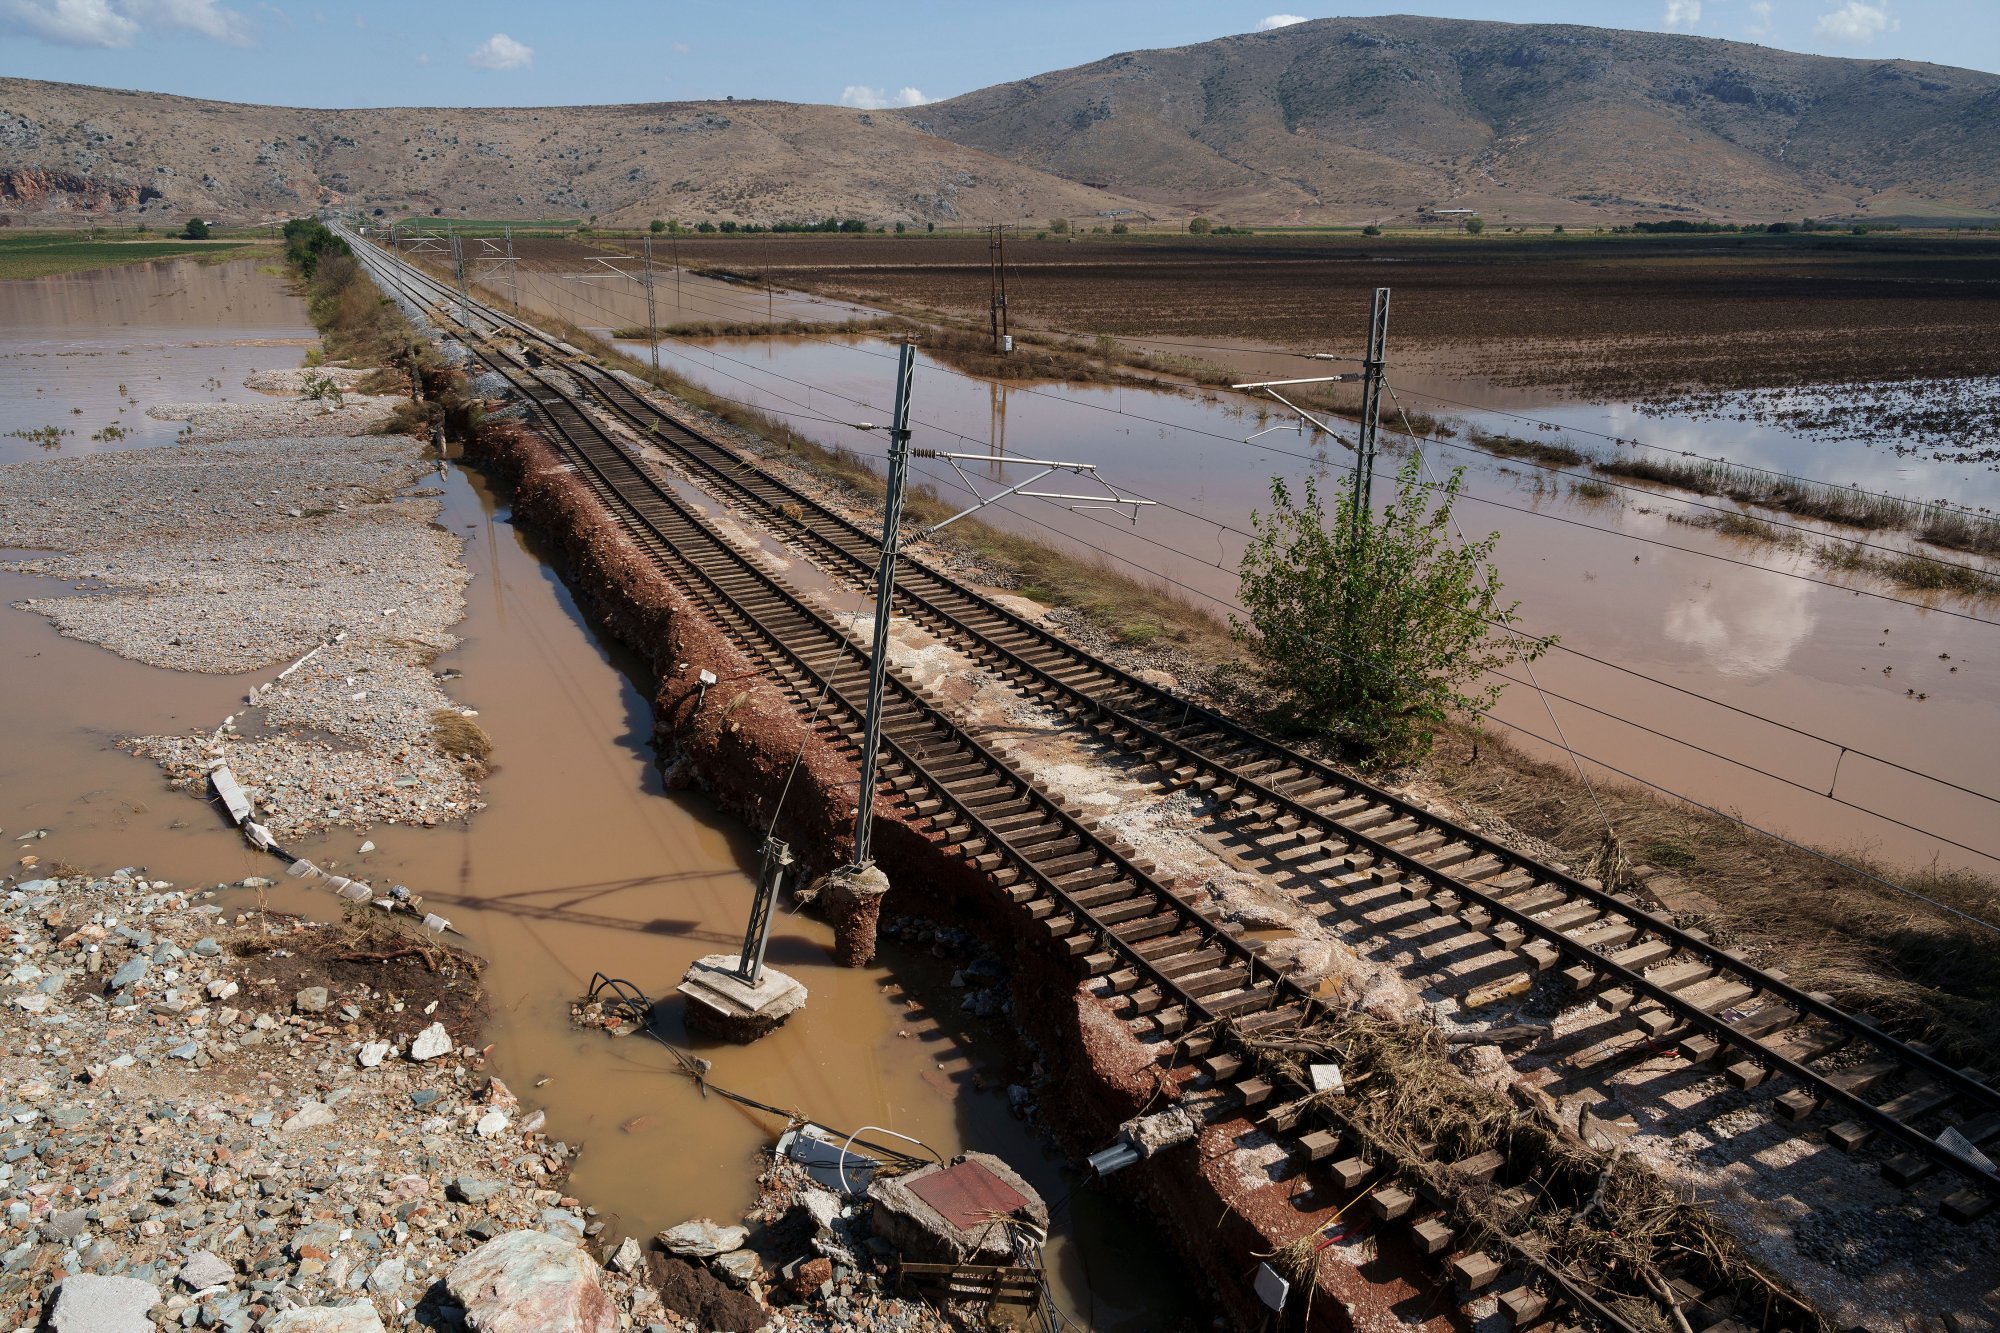 Σιδηρόδρομος: Σε δύο χρόνια η πλήρης αποκατάσταση του δικτύου – Έχουν καταστραφεί 180 χλμ